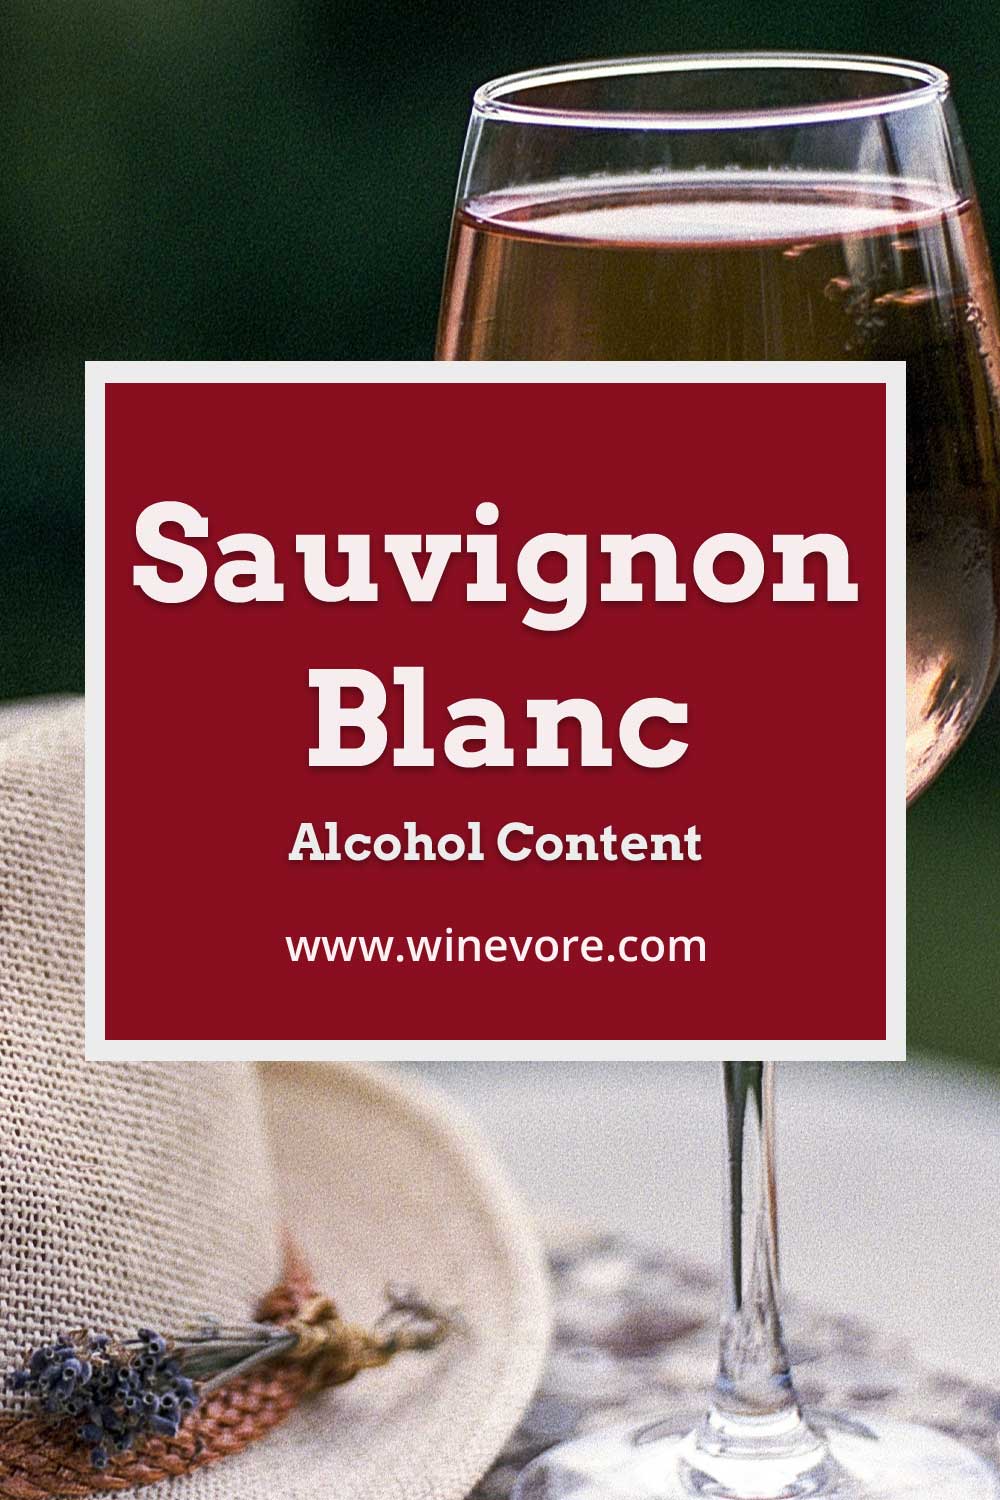 A glass full of white wine - Sauvignon Blanc Alcohol Content.